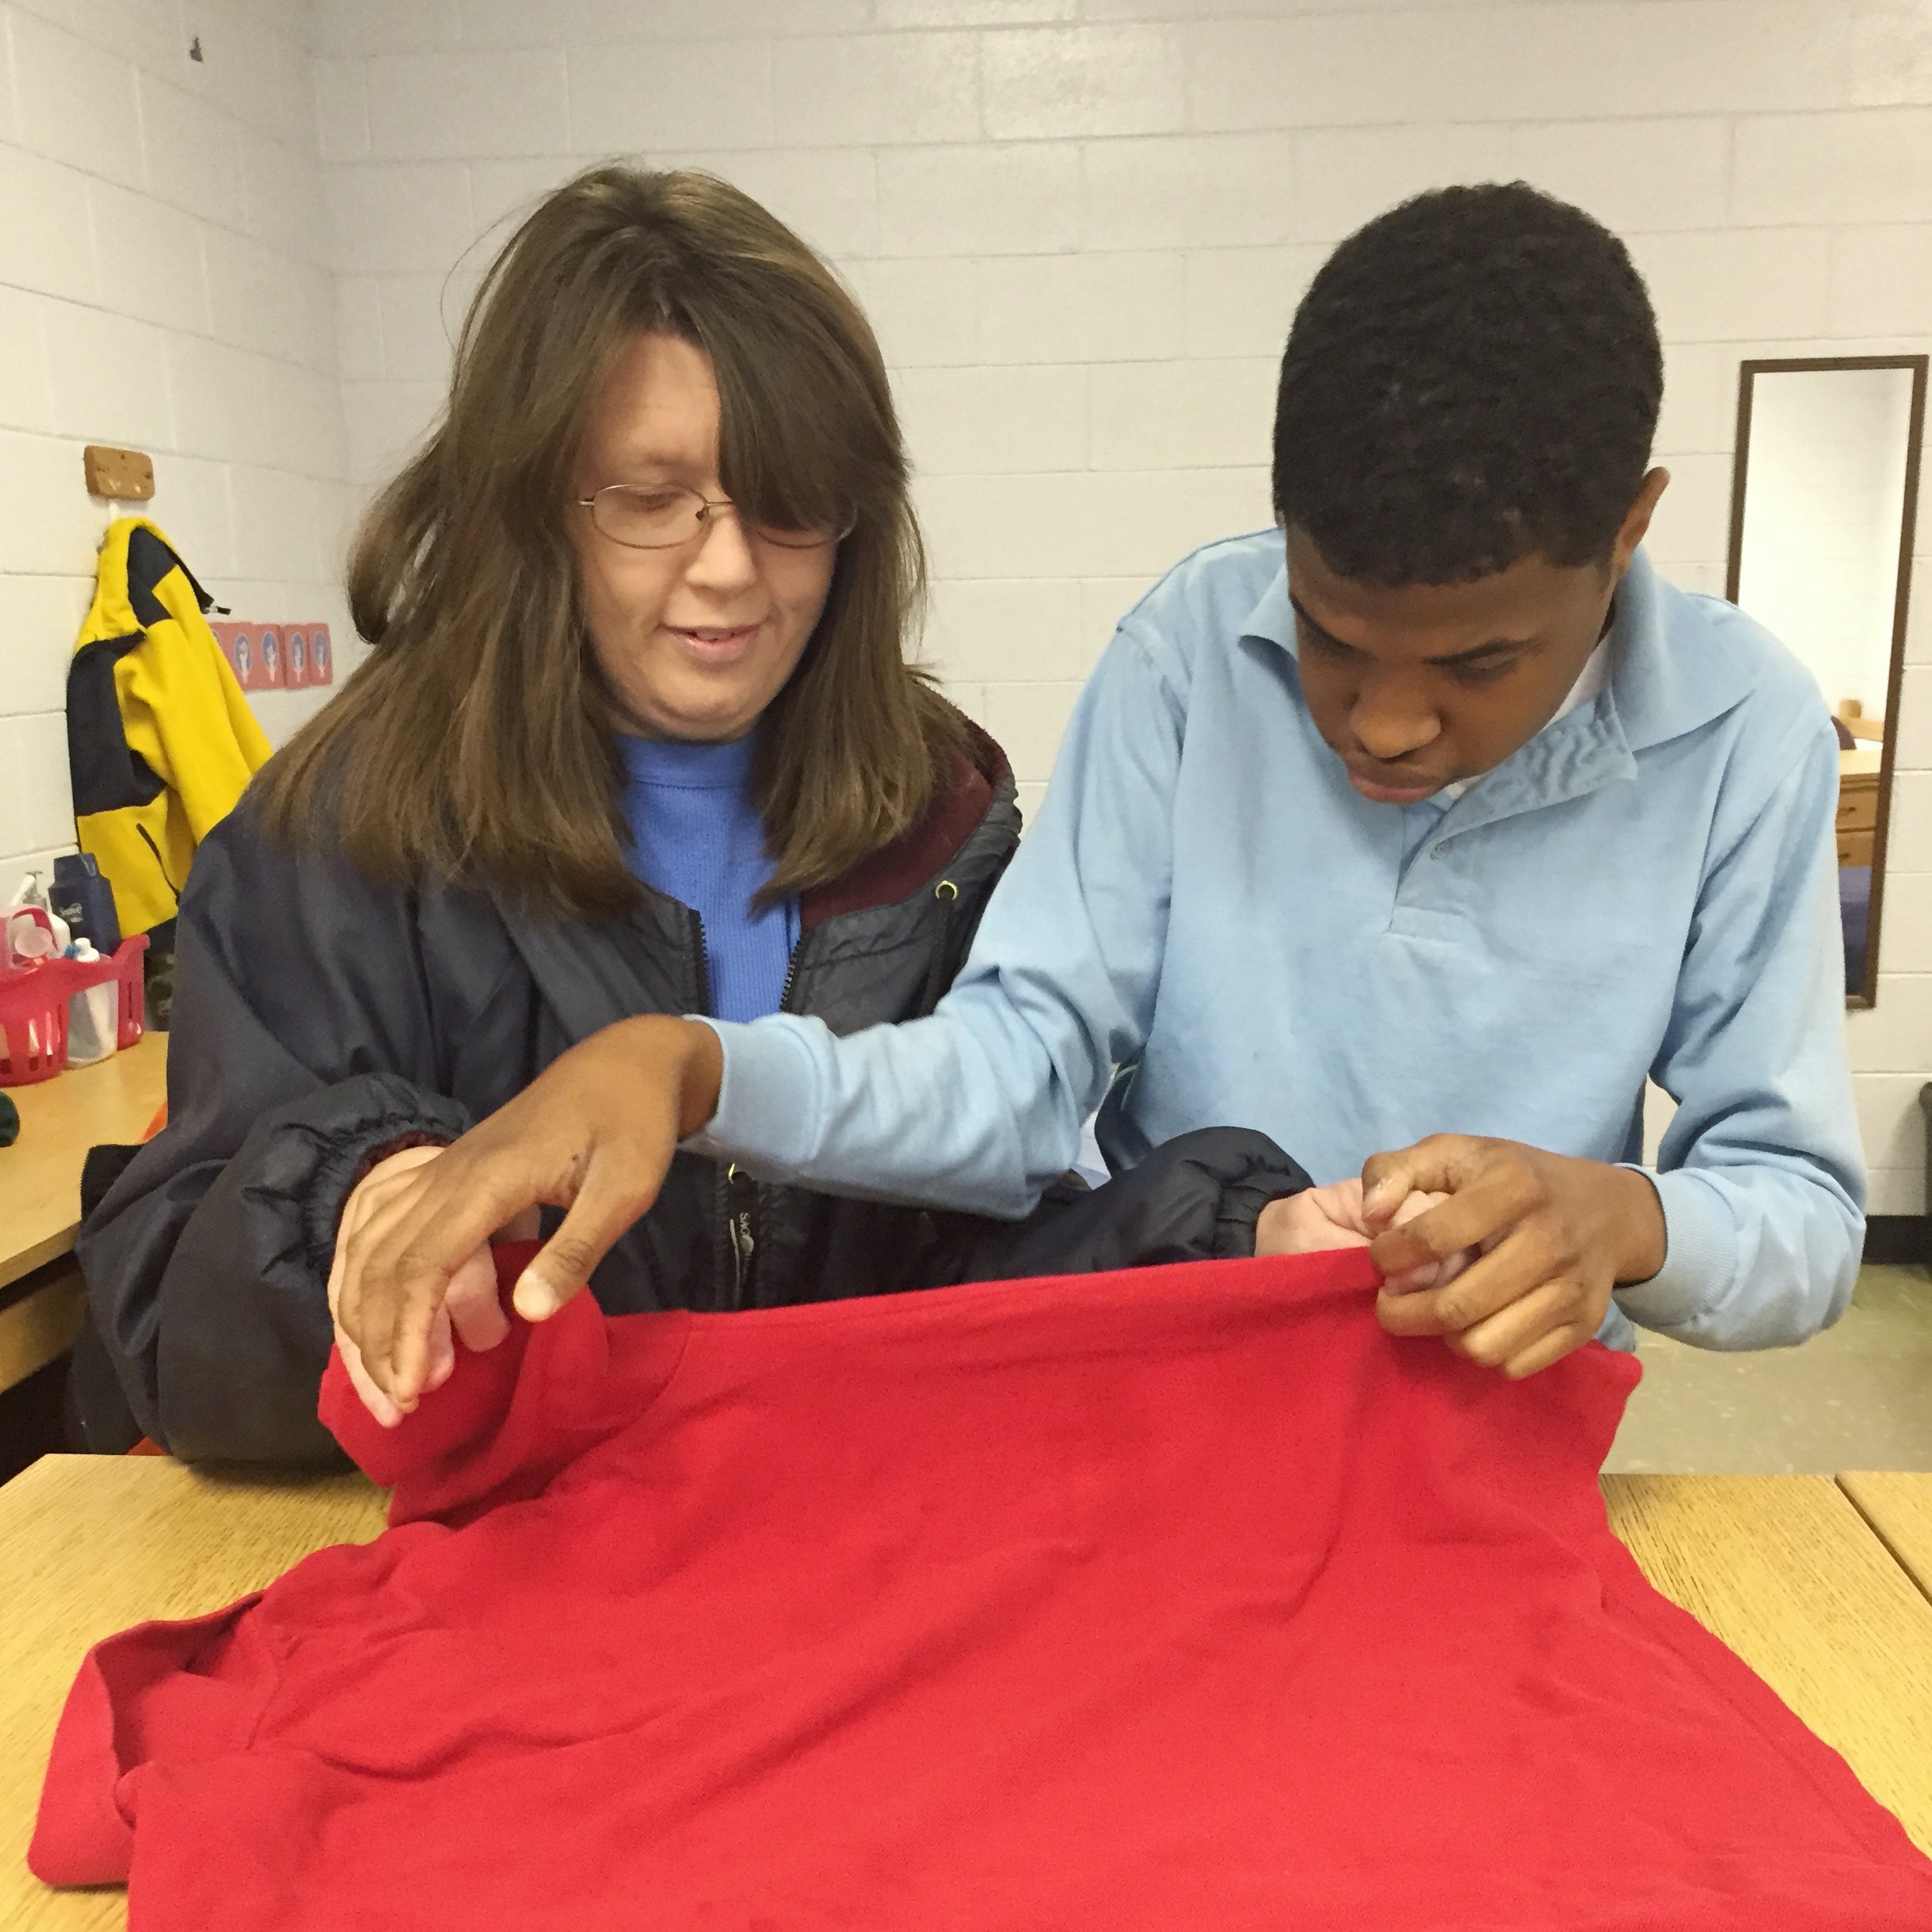 A women helping a young man fold shirt.